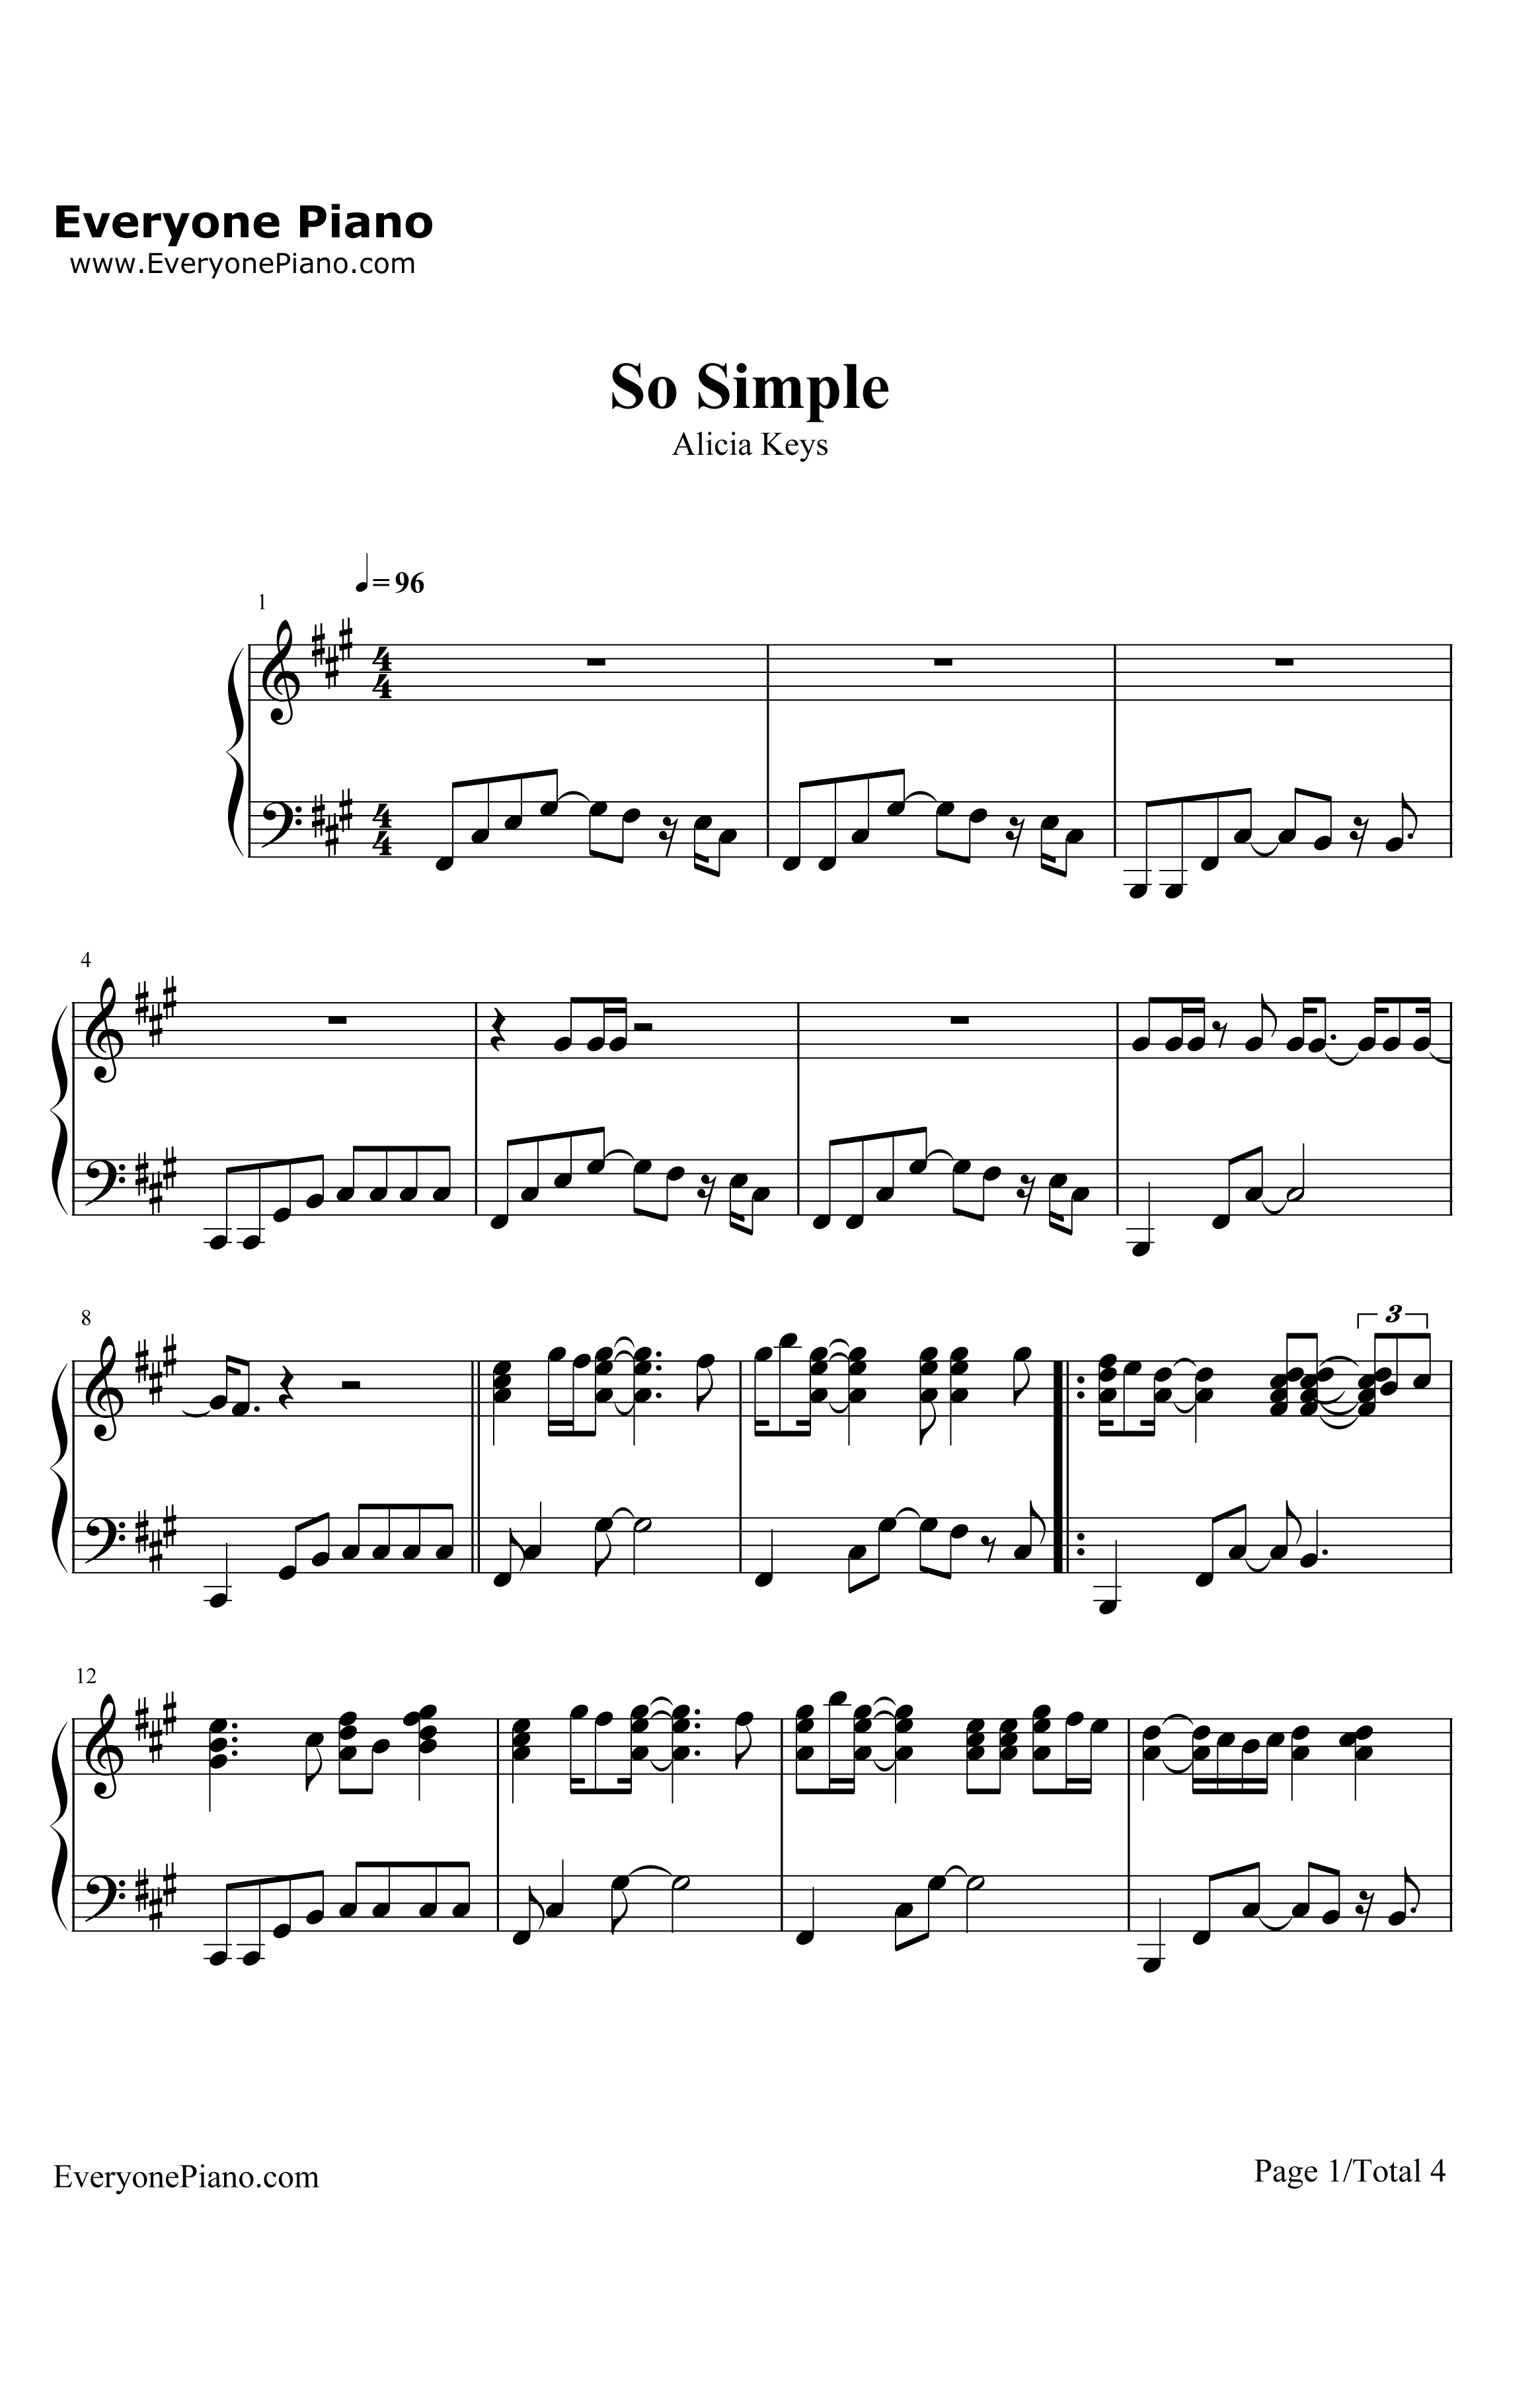 SoSimple钢琴谱-AliciaKeys1